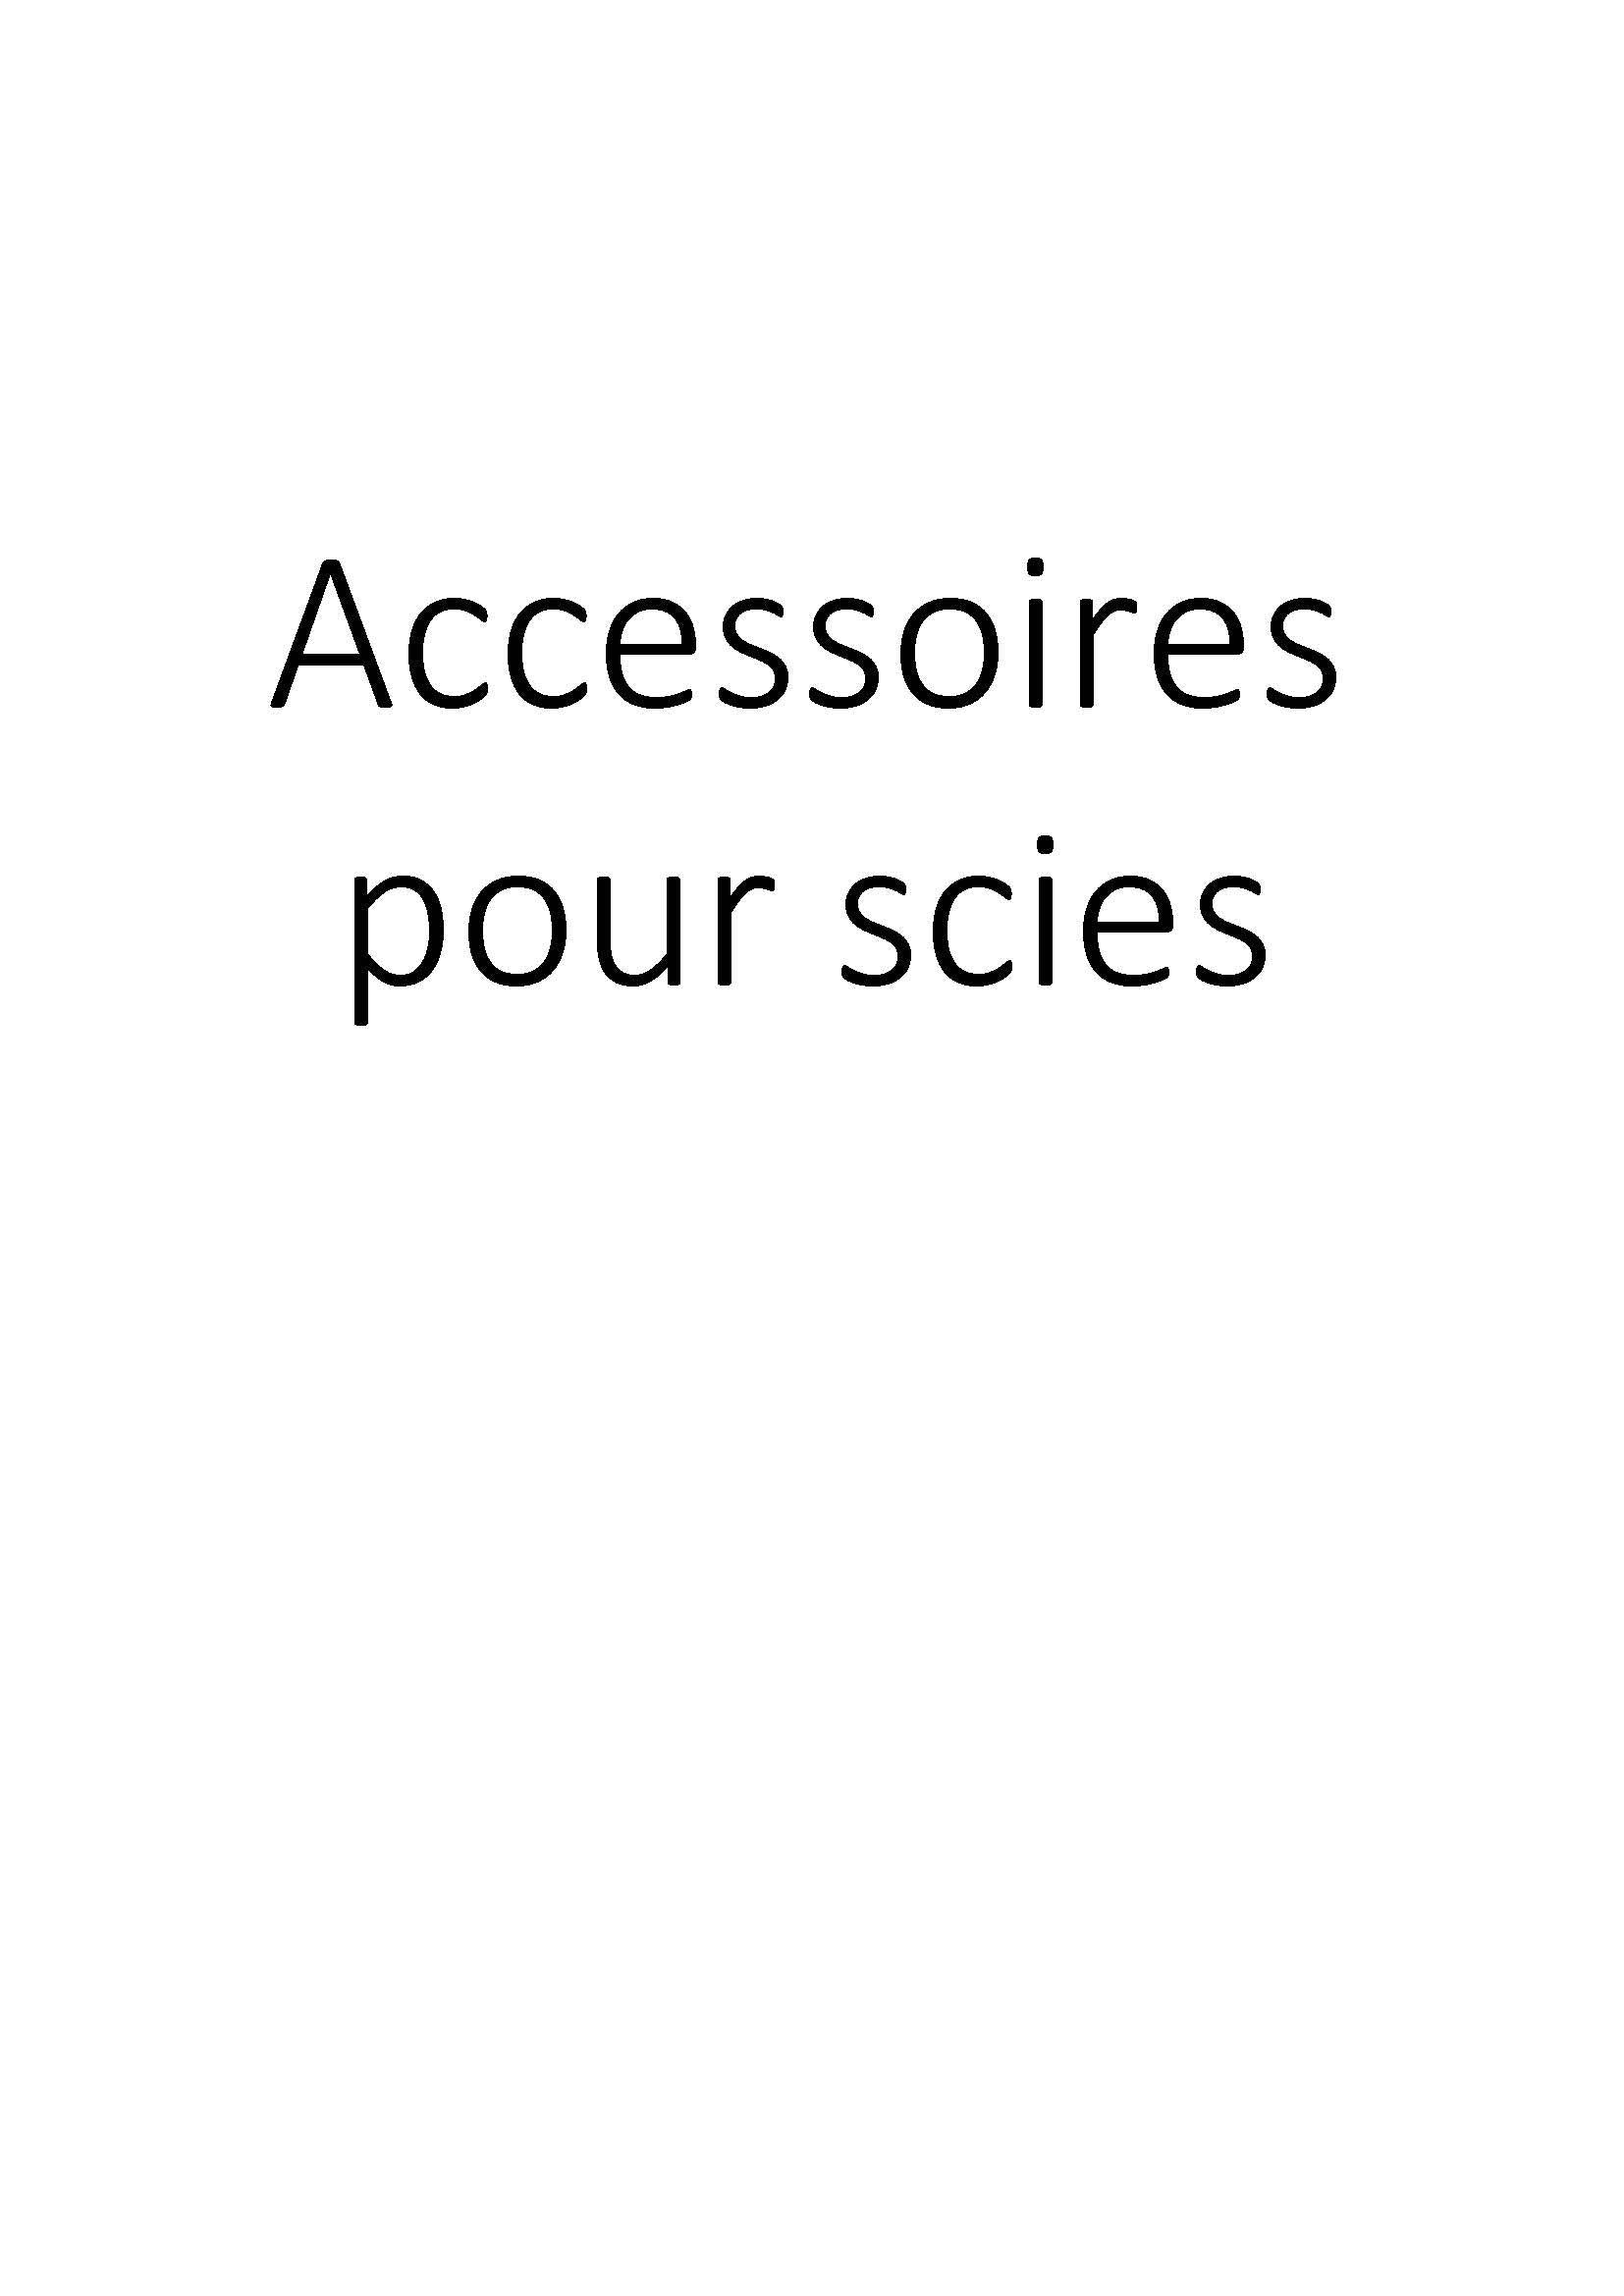 Accessoires pour scies clicktofournisseur.com